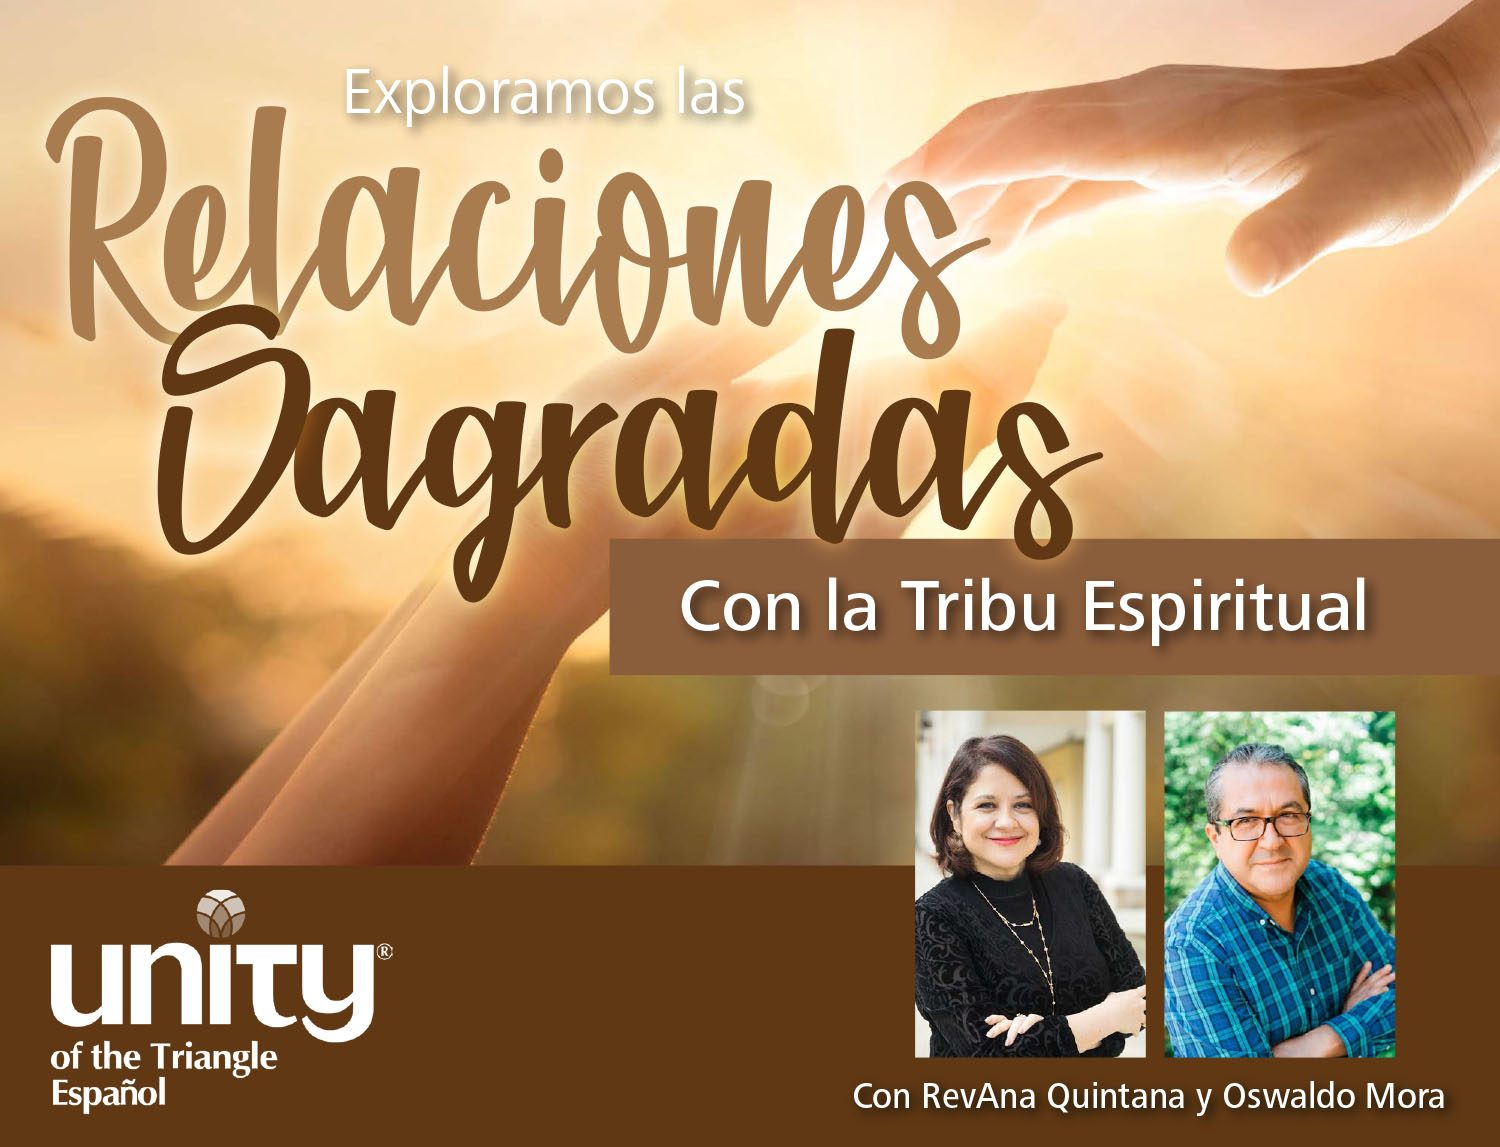 Exploramos las Relaciones Sagradas – Con la Tribu Espiritual